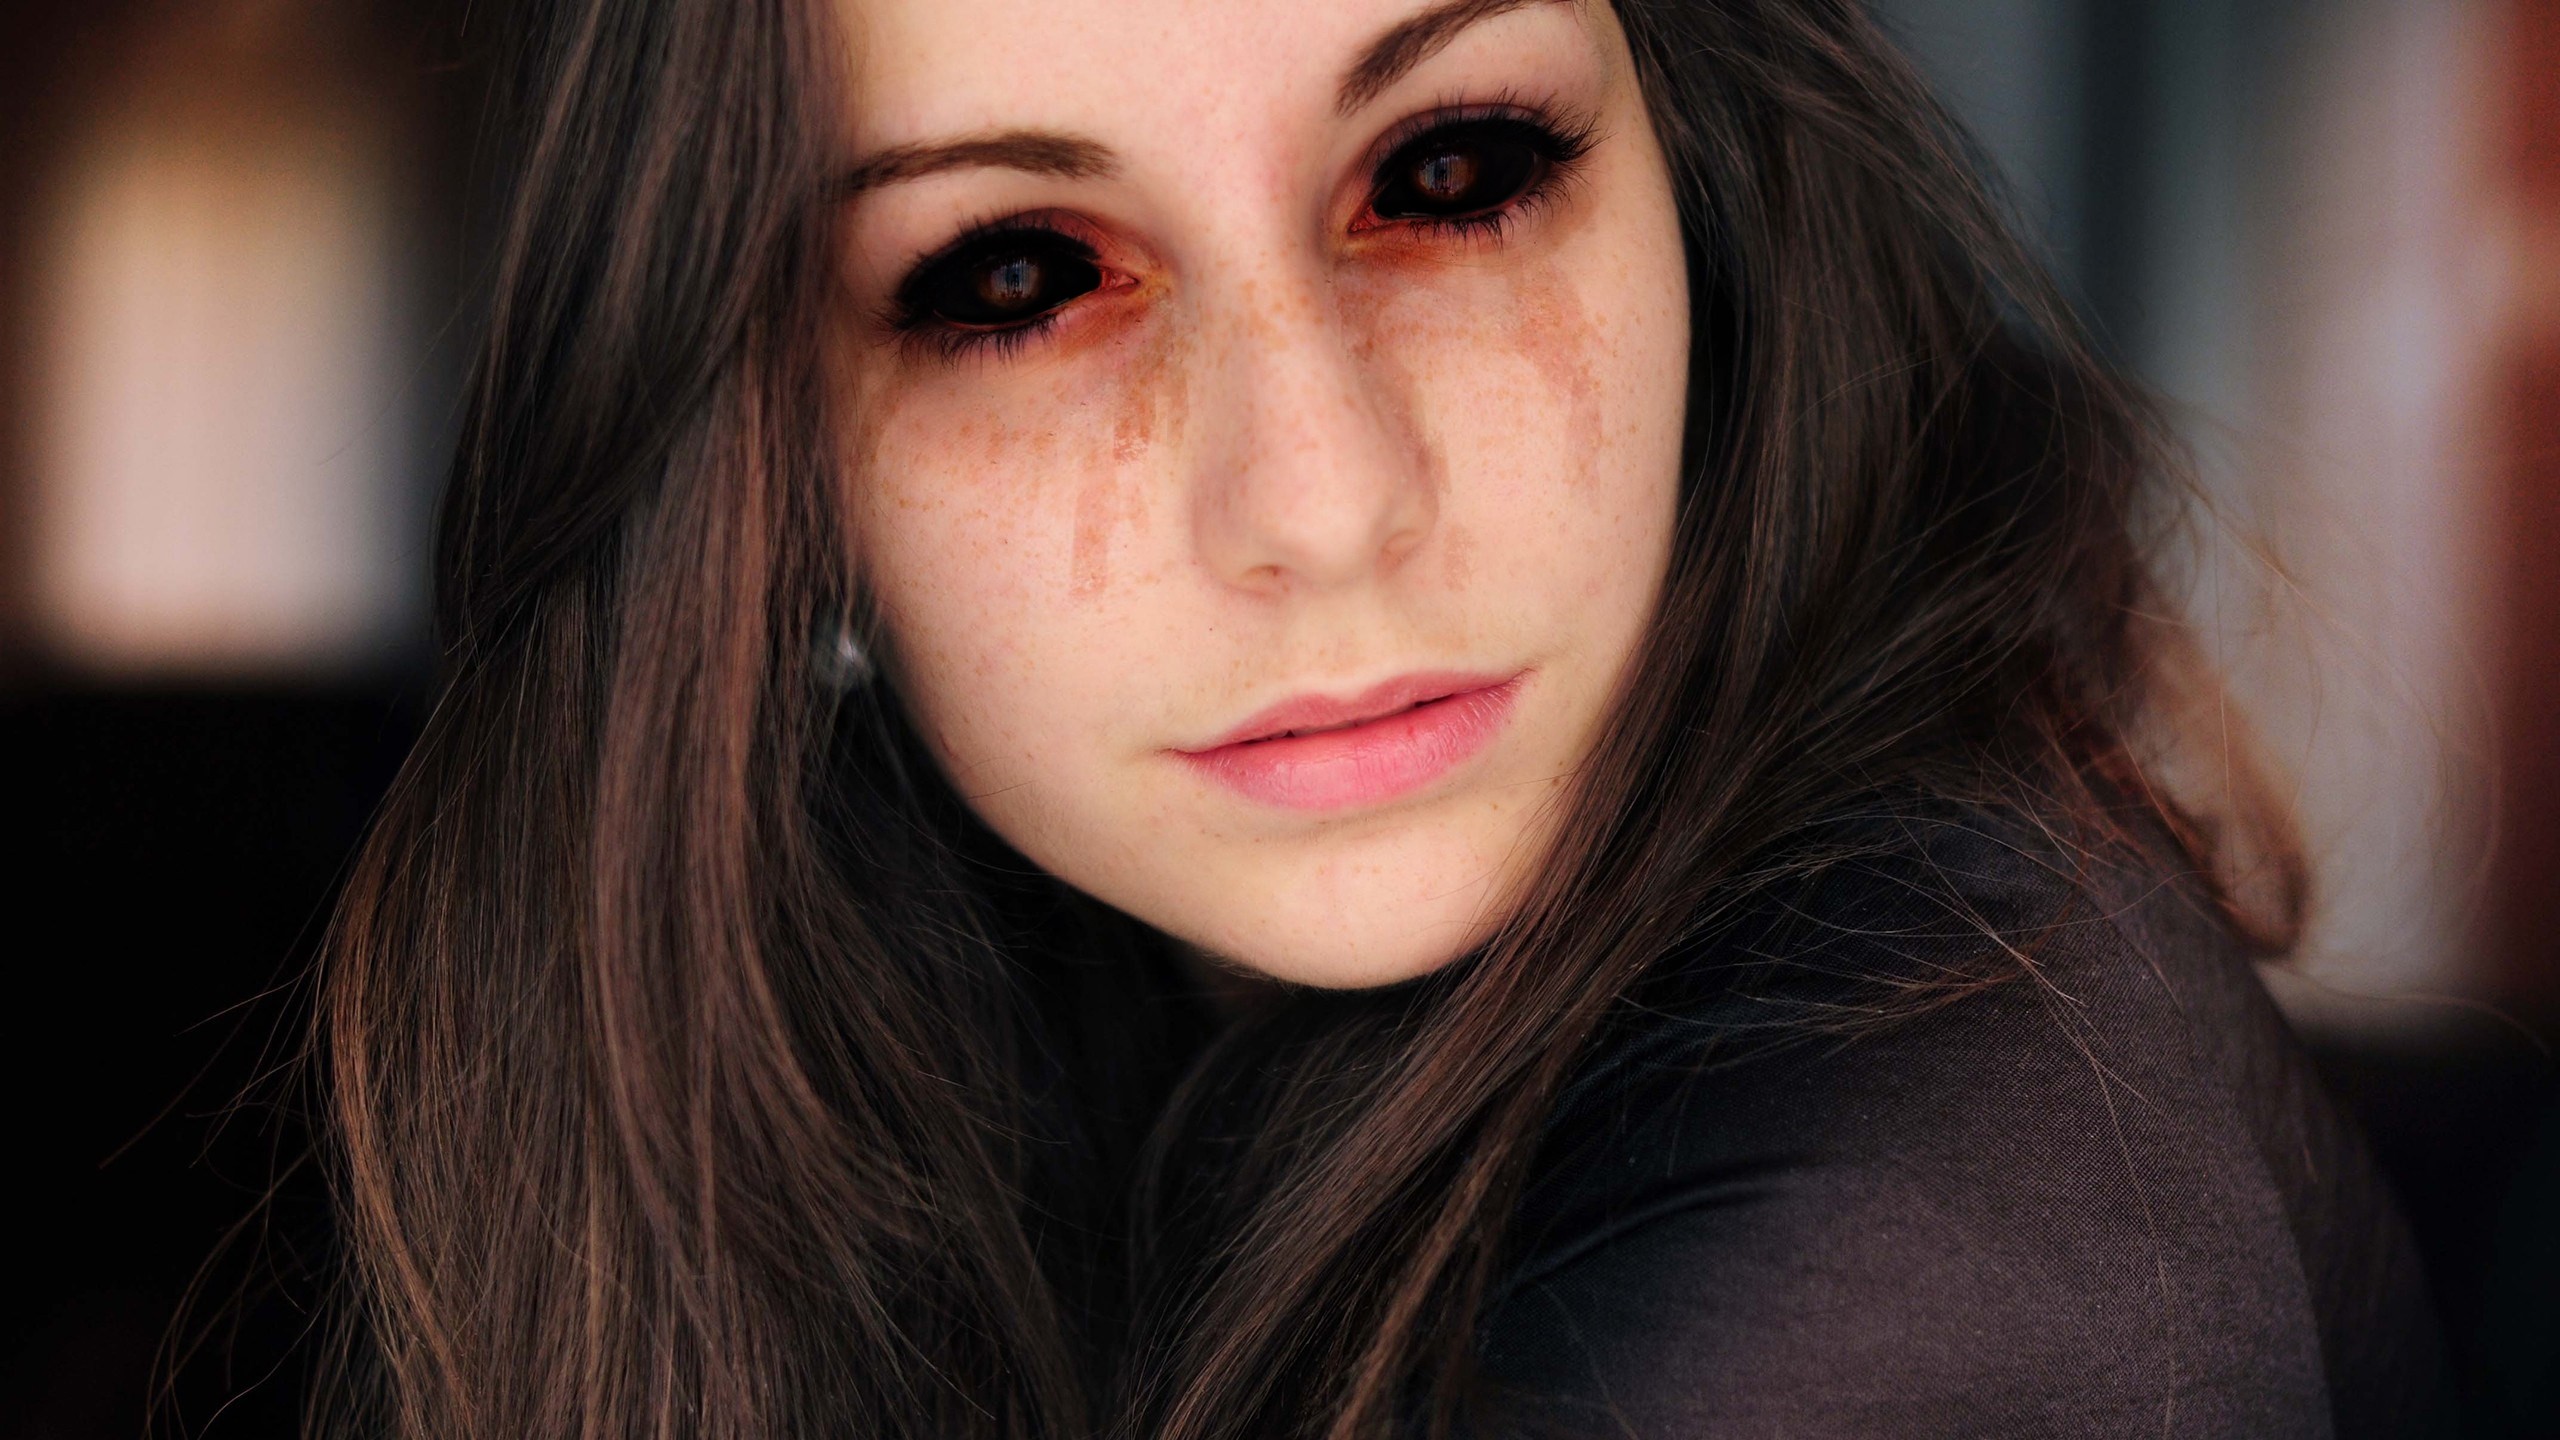 People 2560x1440 dark eyes women face long hair creepy black sclera photo manipulation closeup eyes